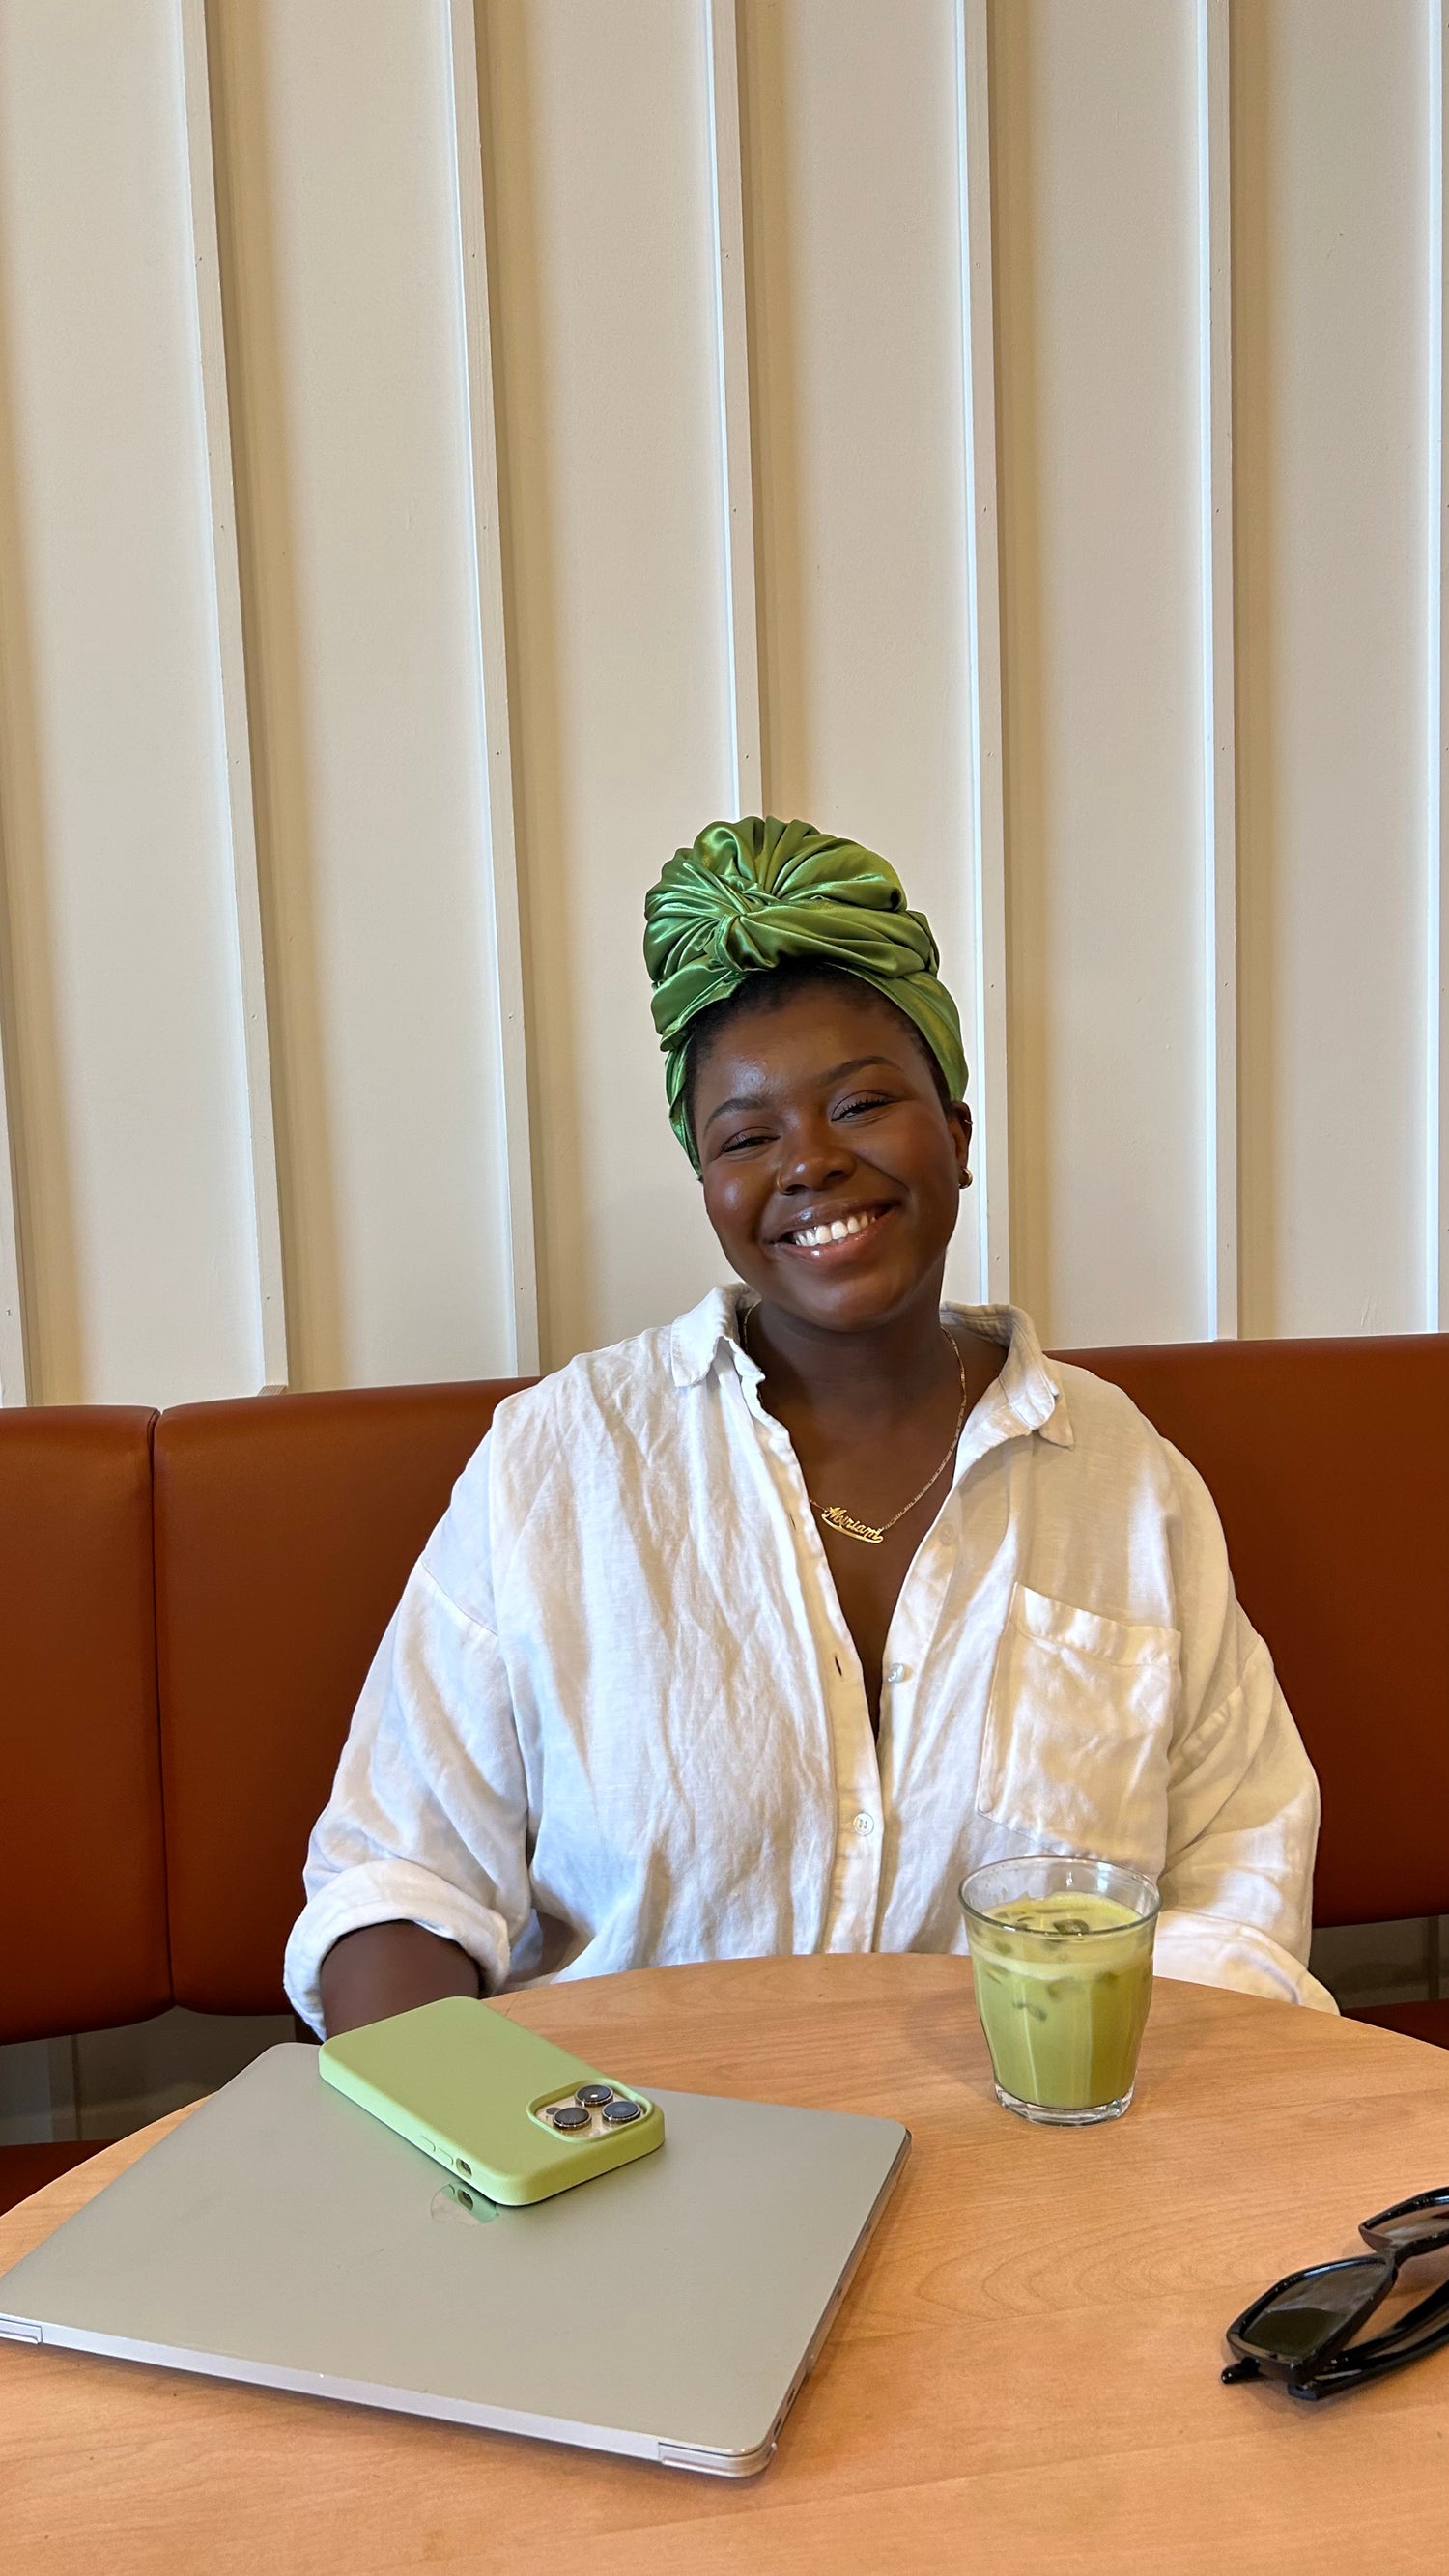 Dans cette image, nous voyons Miriam Nkosi, fondatrice d'imawrap qui porte un foulard en satin vert nommé Jolene. Elle est assise et sourit